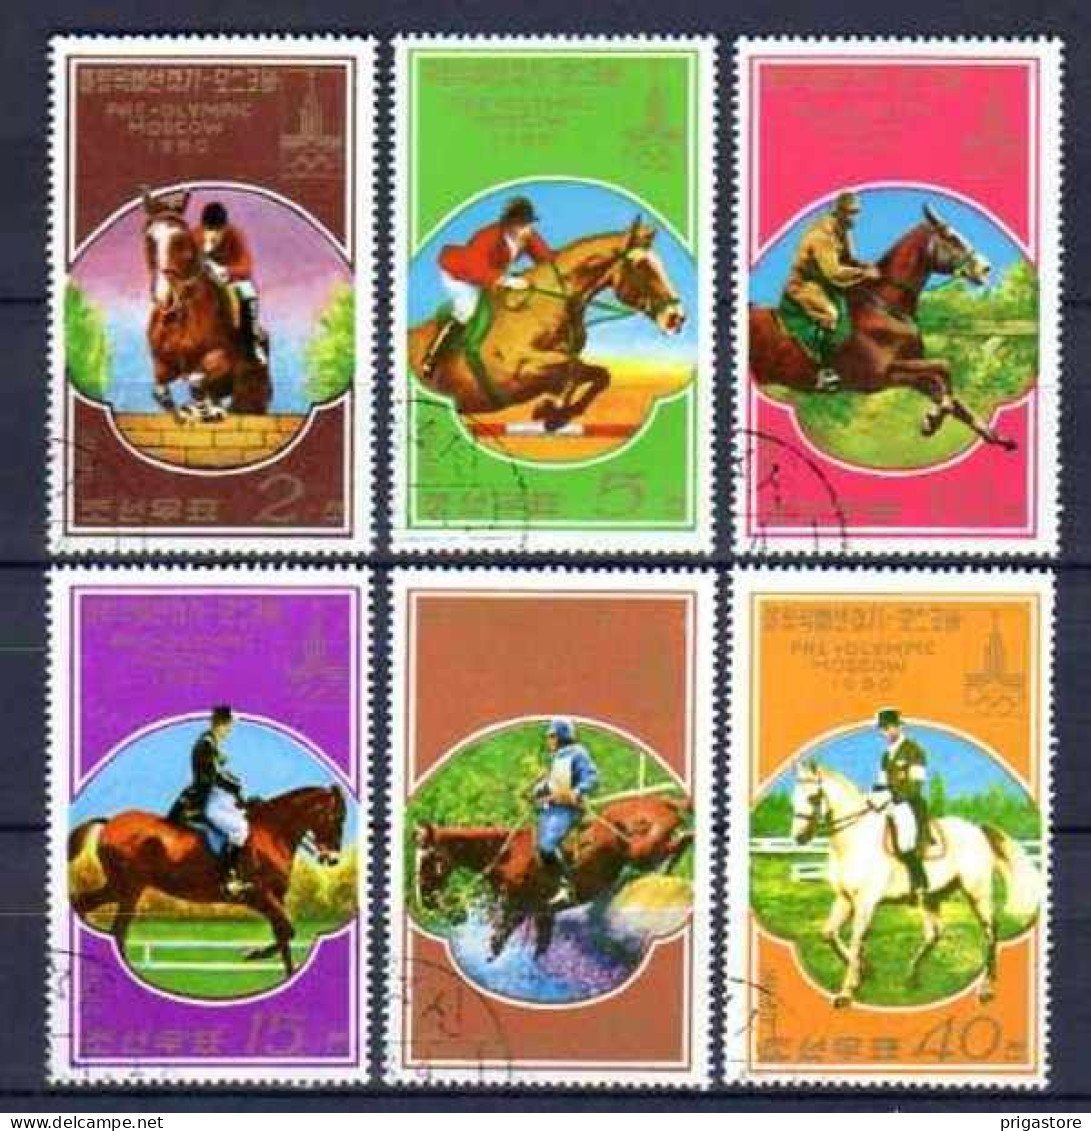 Chevaux Corée Du Nord 1980 (7) Yvert N° 1446 A à 1446 F Oblitérés Used - Horses